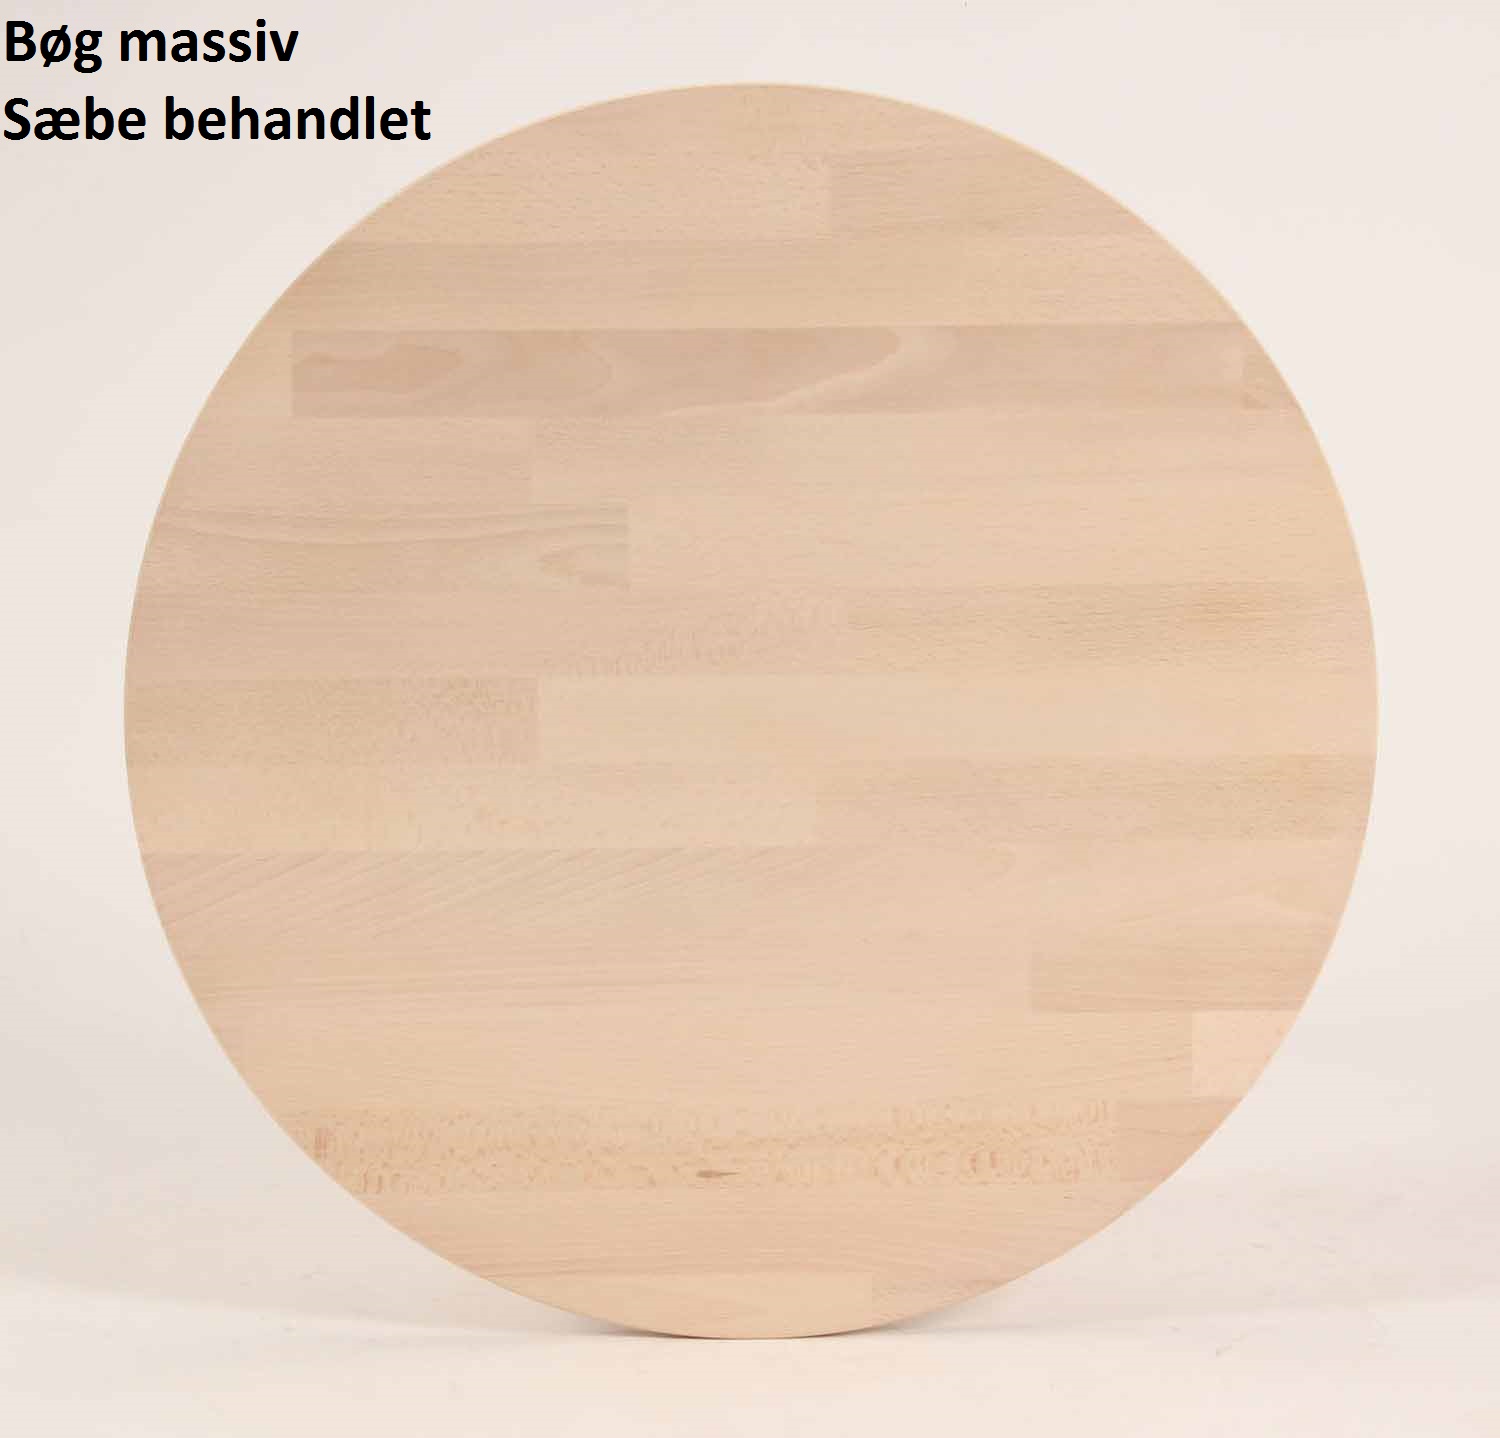 Lumber - rundt spisebord ø 100 cm, med 2 tillægsplader, massiv bøg Sæbebehandlet